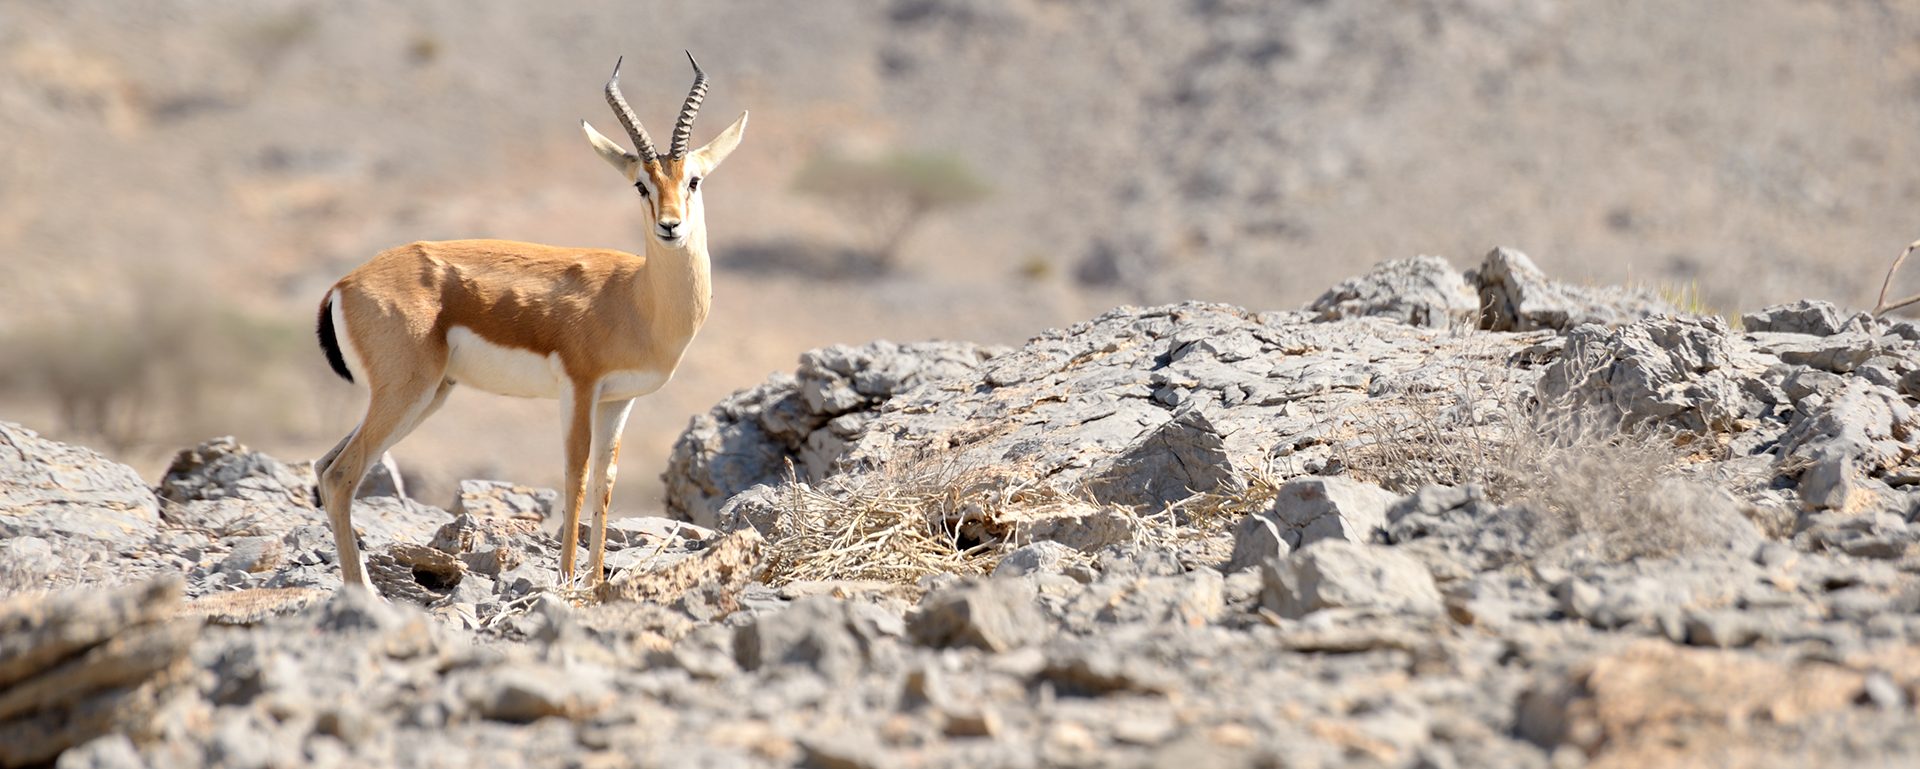 wild arabian gazelle